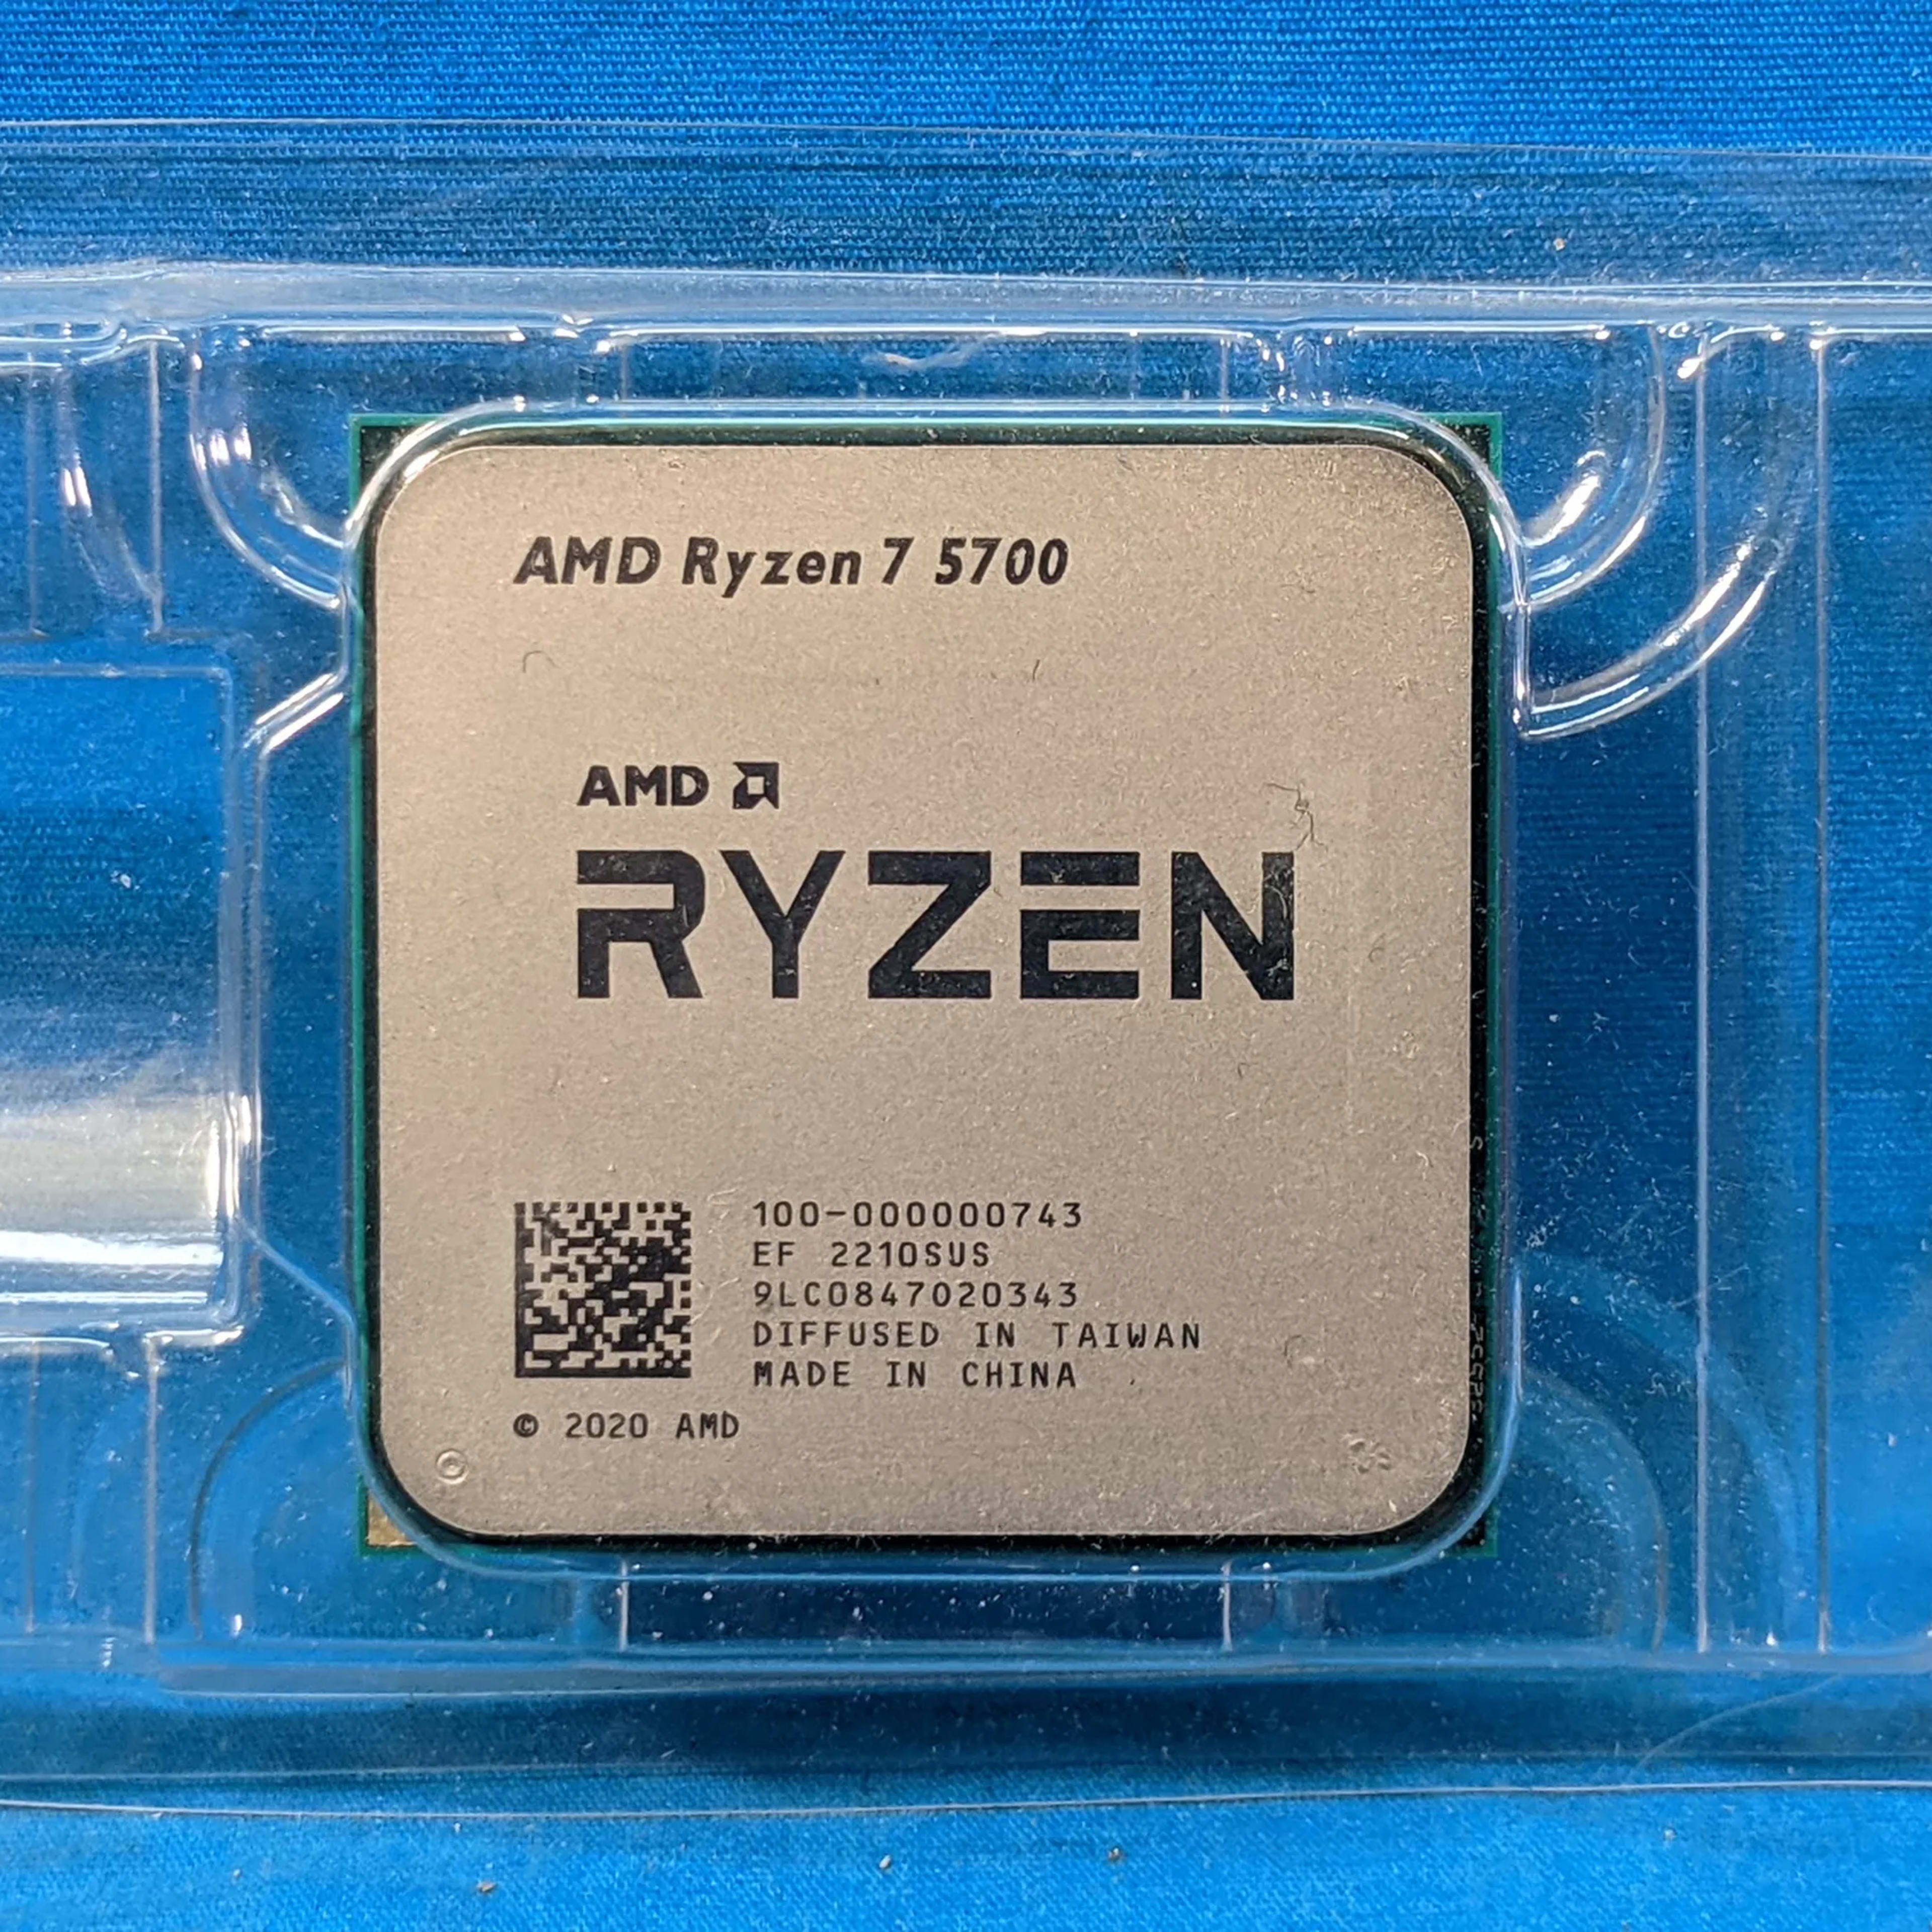 AMD Ryzen 7 5700 4.6GHz Socket AM4 8-Core 16-Thread 16MB Desktop CPU 100-000000743